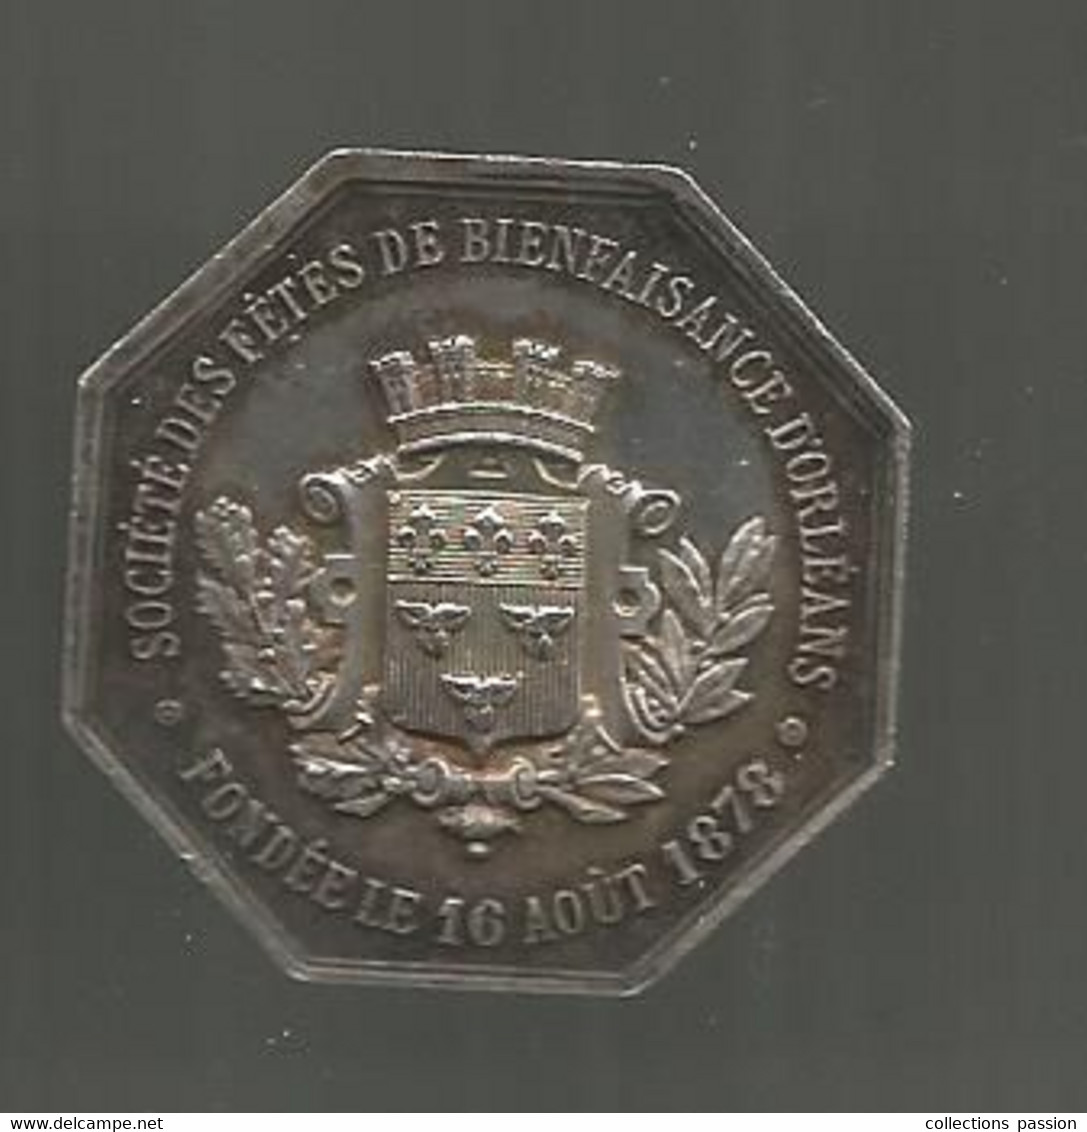 Jeton Argent, Société Des Fêtes De Bienfaisance D'ORLEANS Fondée Le 16 Août 1878, 2 Scans, 33 X 33 Mm - Professionals / Firms